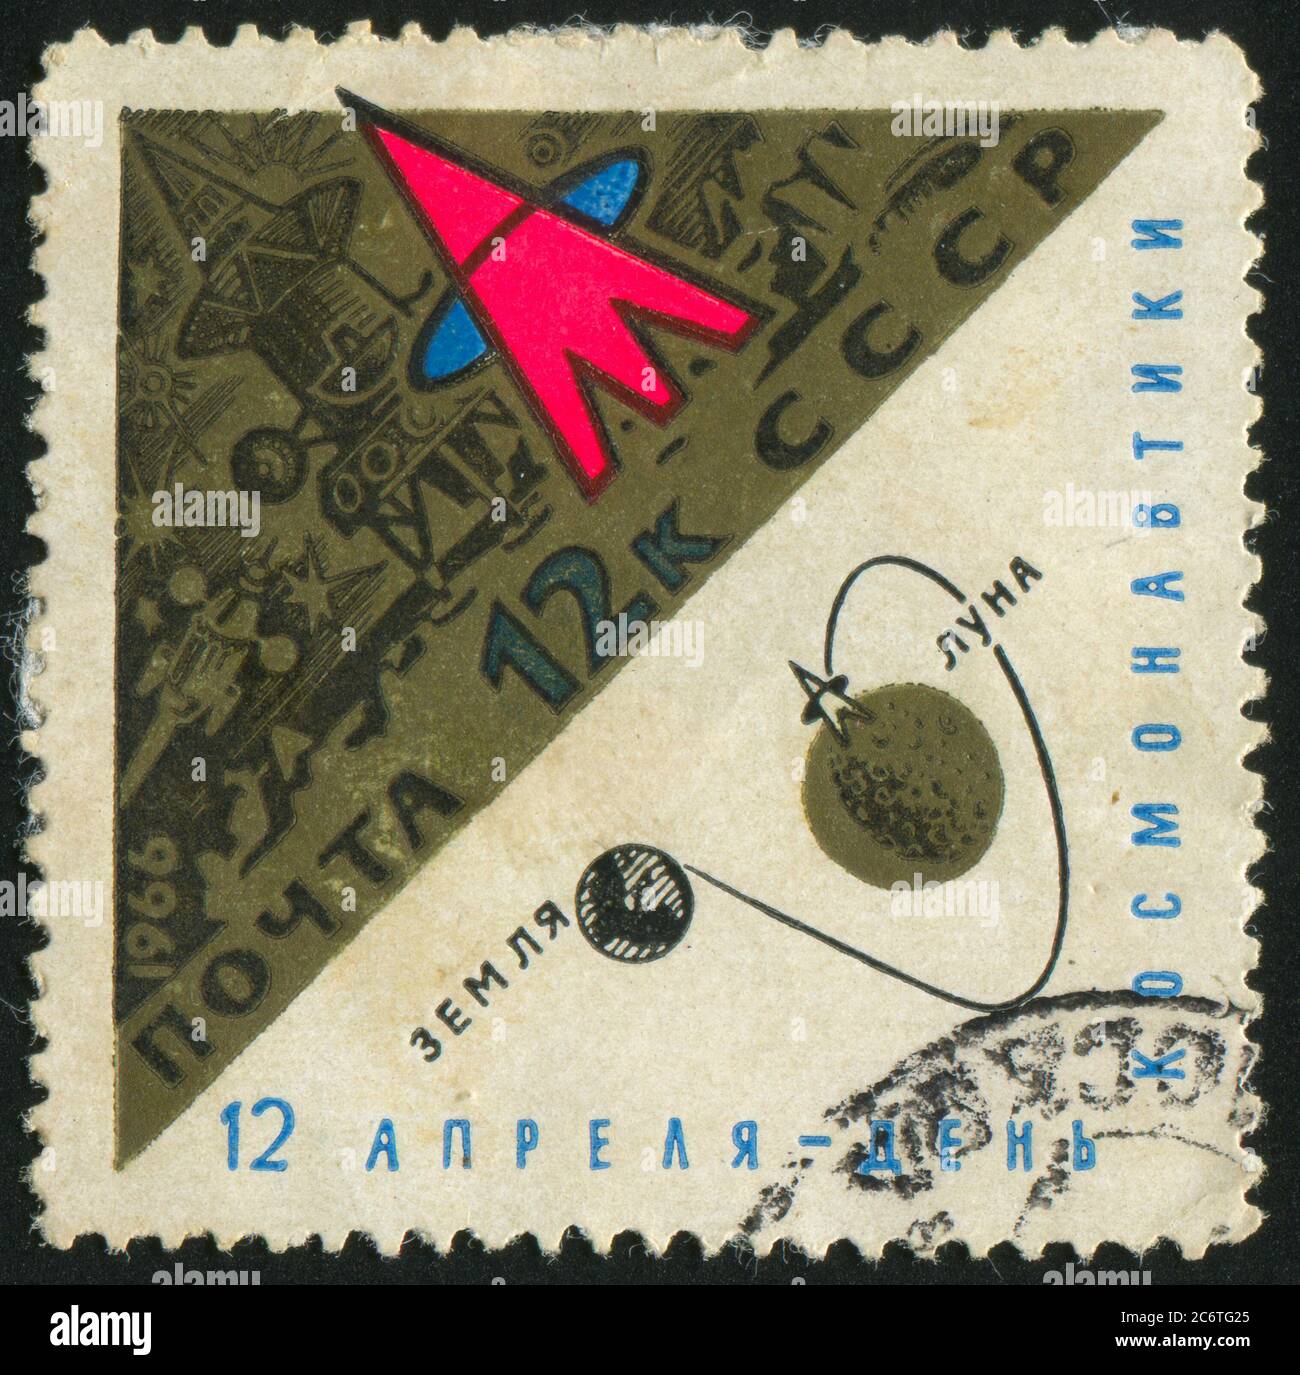 RUSSIE - VERS 1966 : timbre imprimé par la Russie, montre Station sur la lune, vers 1966 Banque D'Images